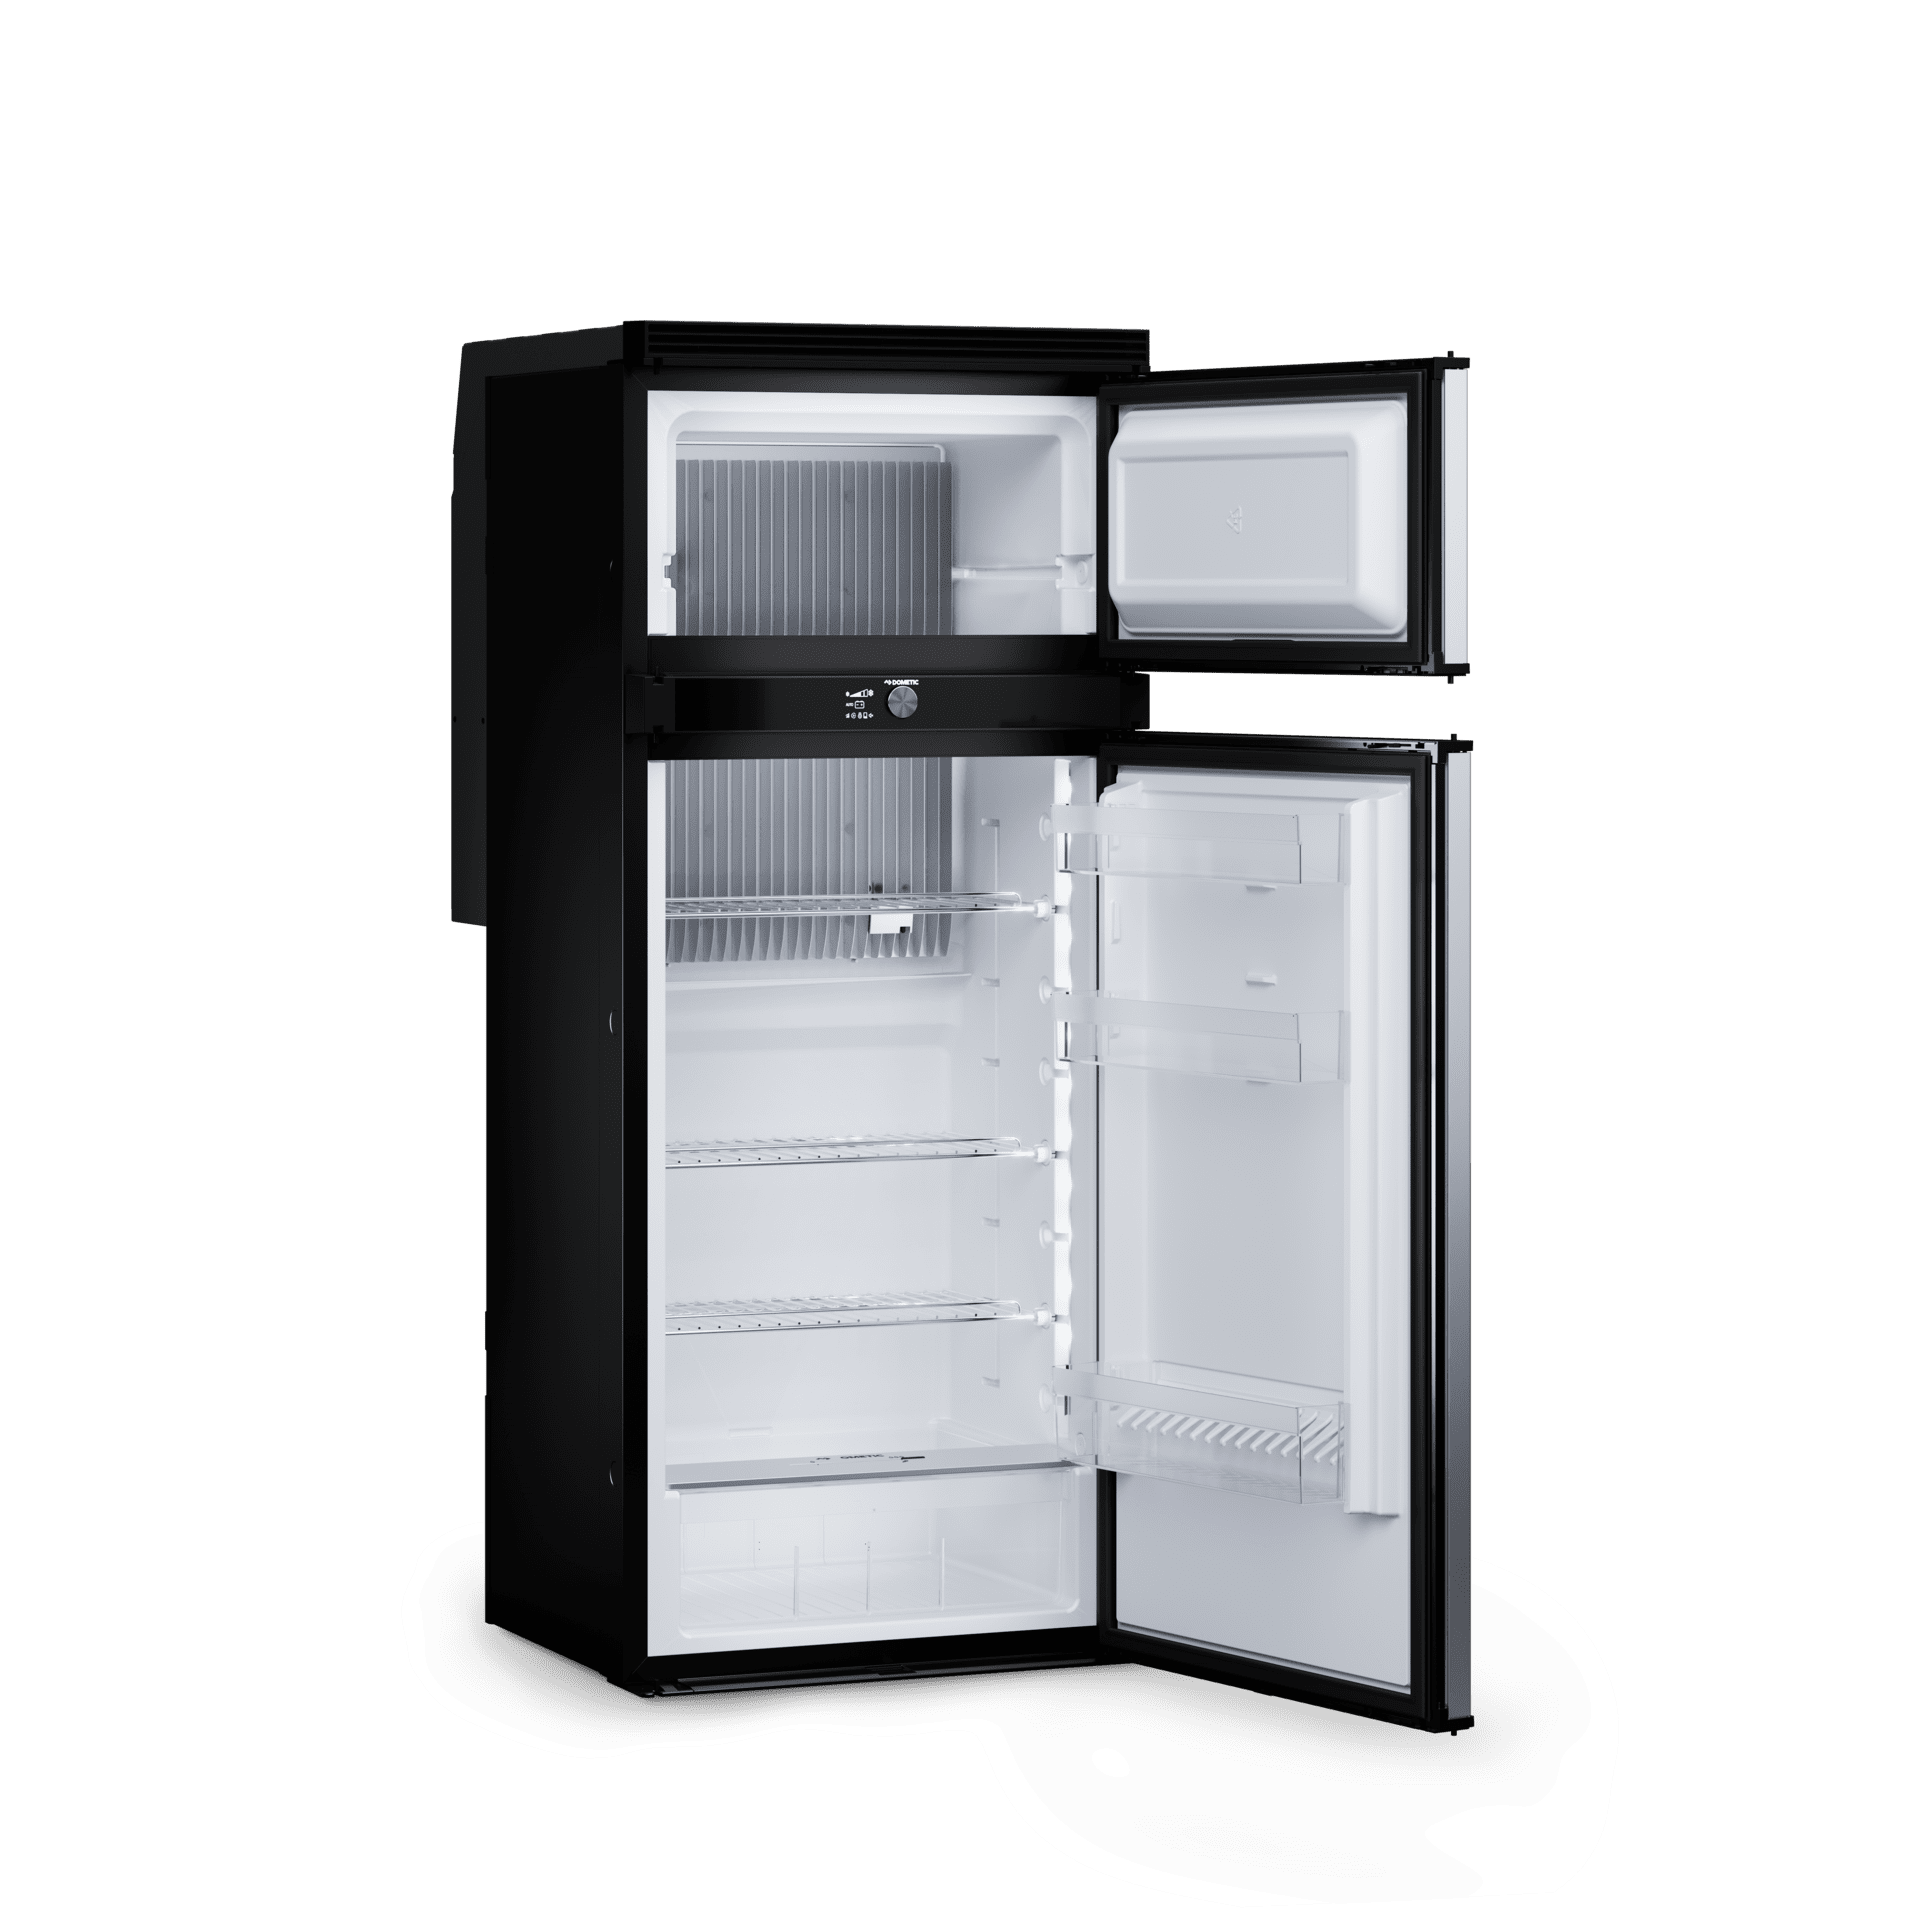 ᐅ Kühlschränke & Aggregate, Dometic - Mobile living made easy.